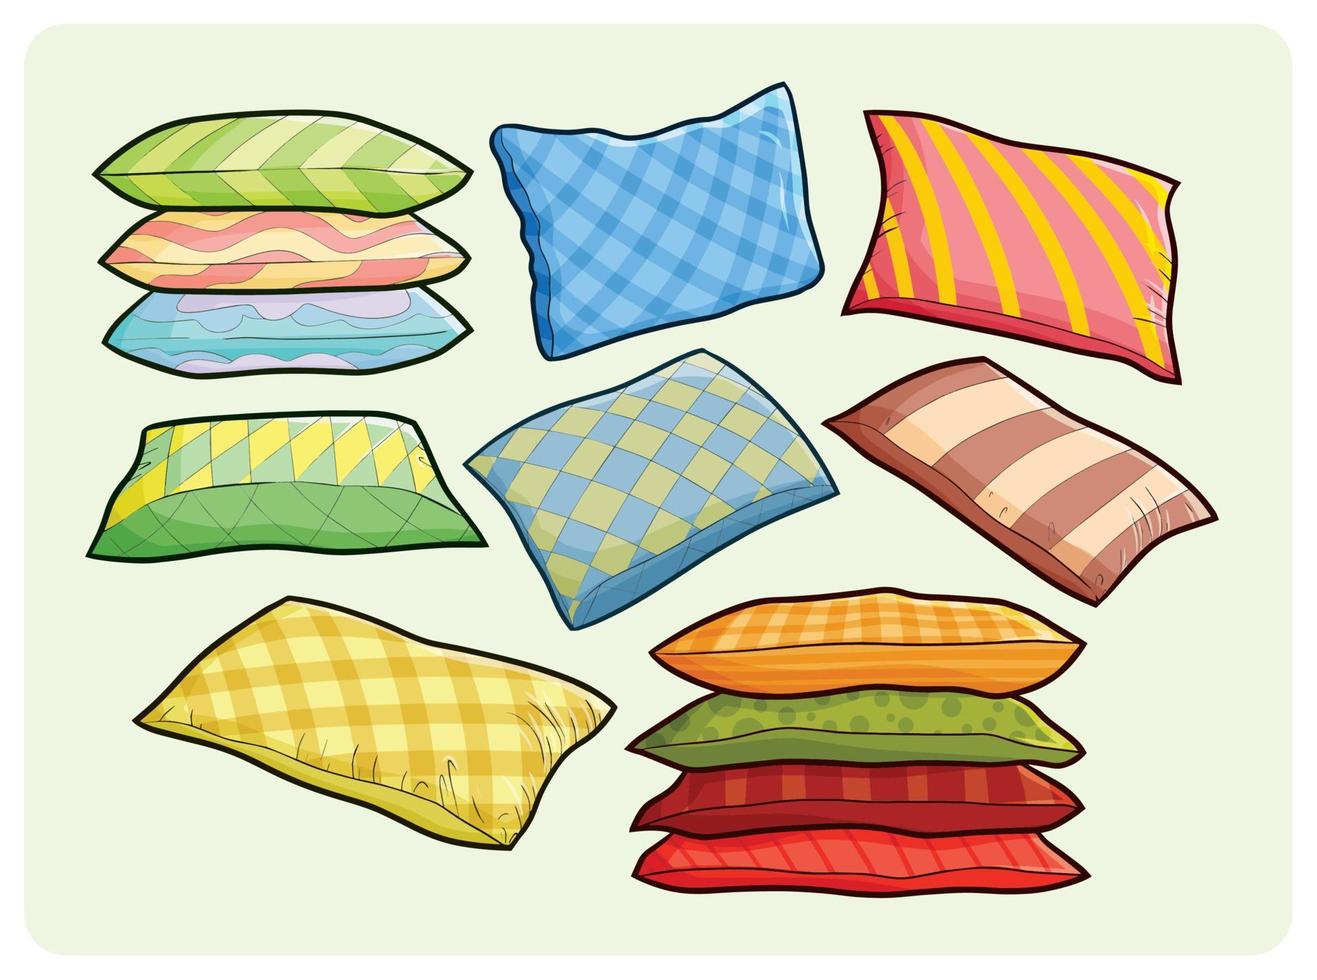 divertente collezione di grandi cuscini colorati in semplice stile cartone animato vettore